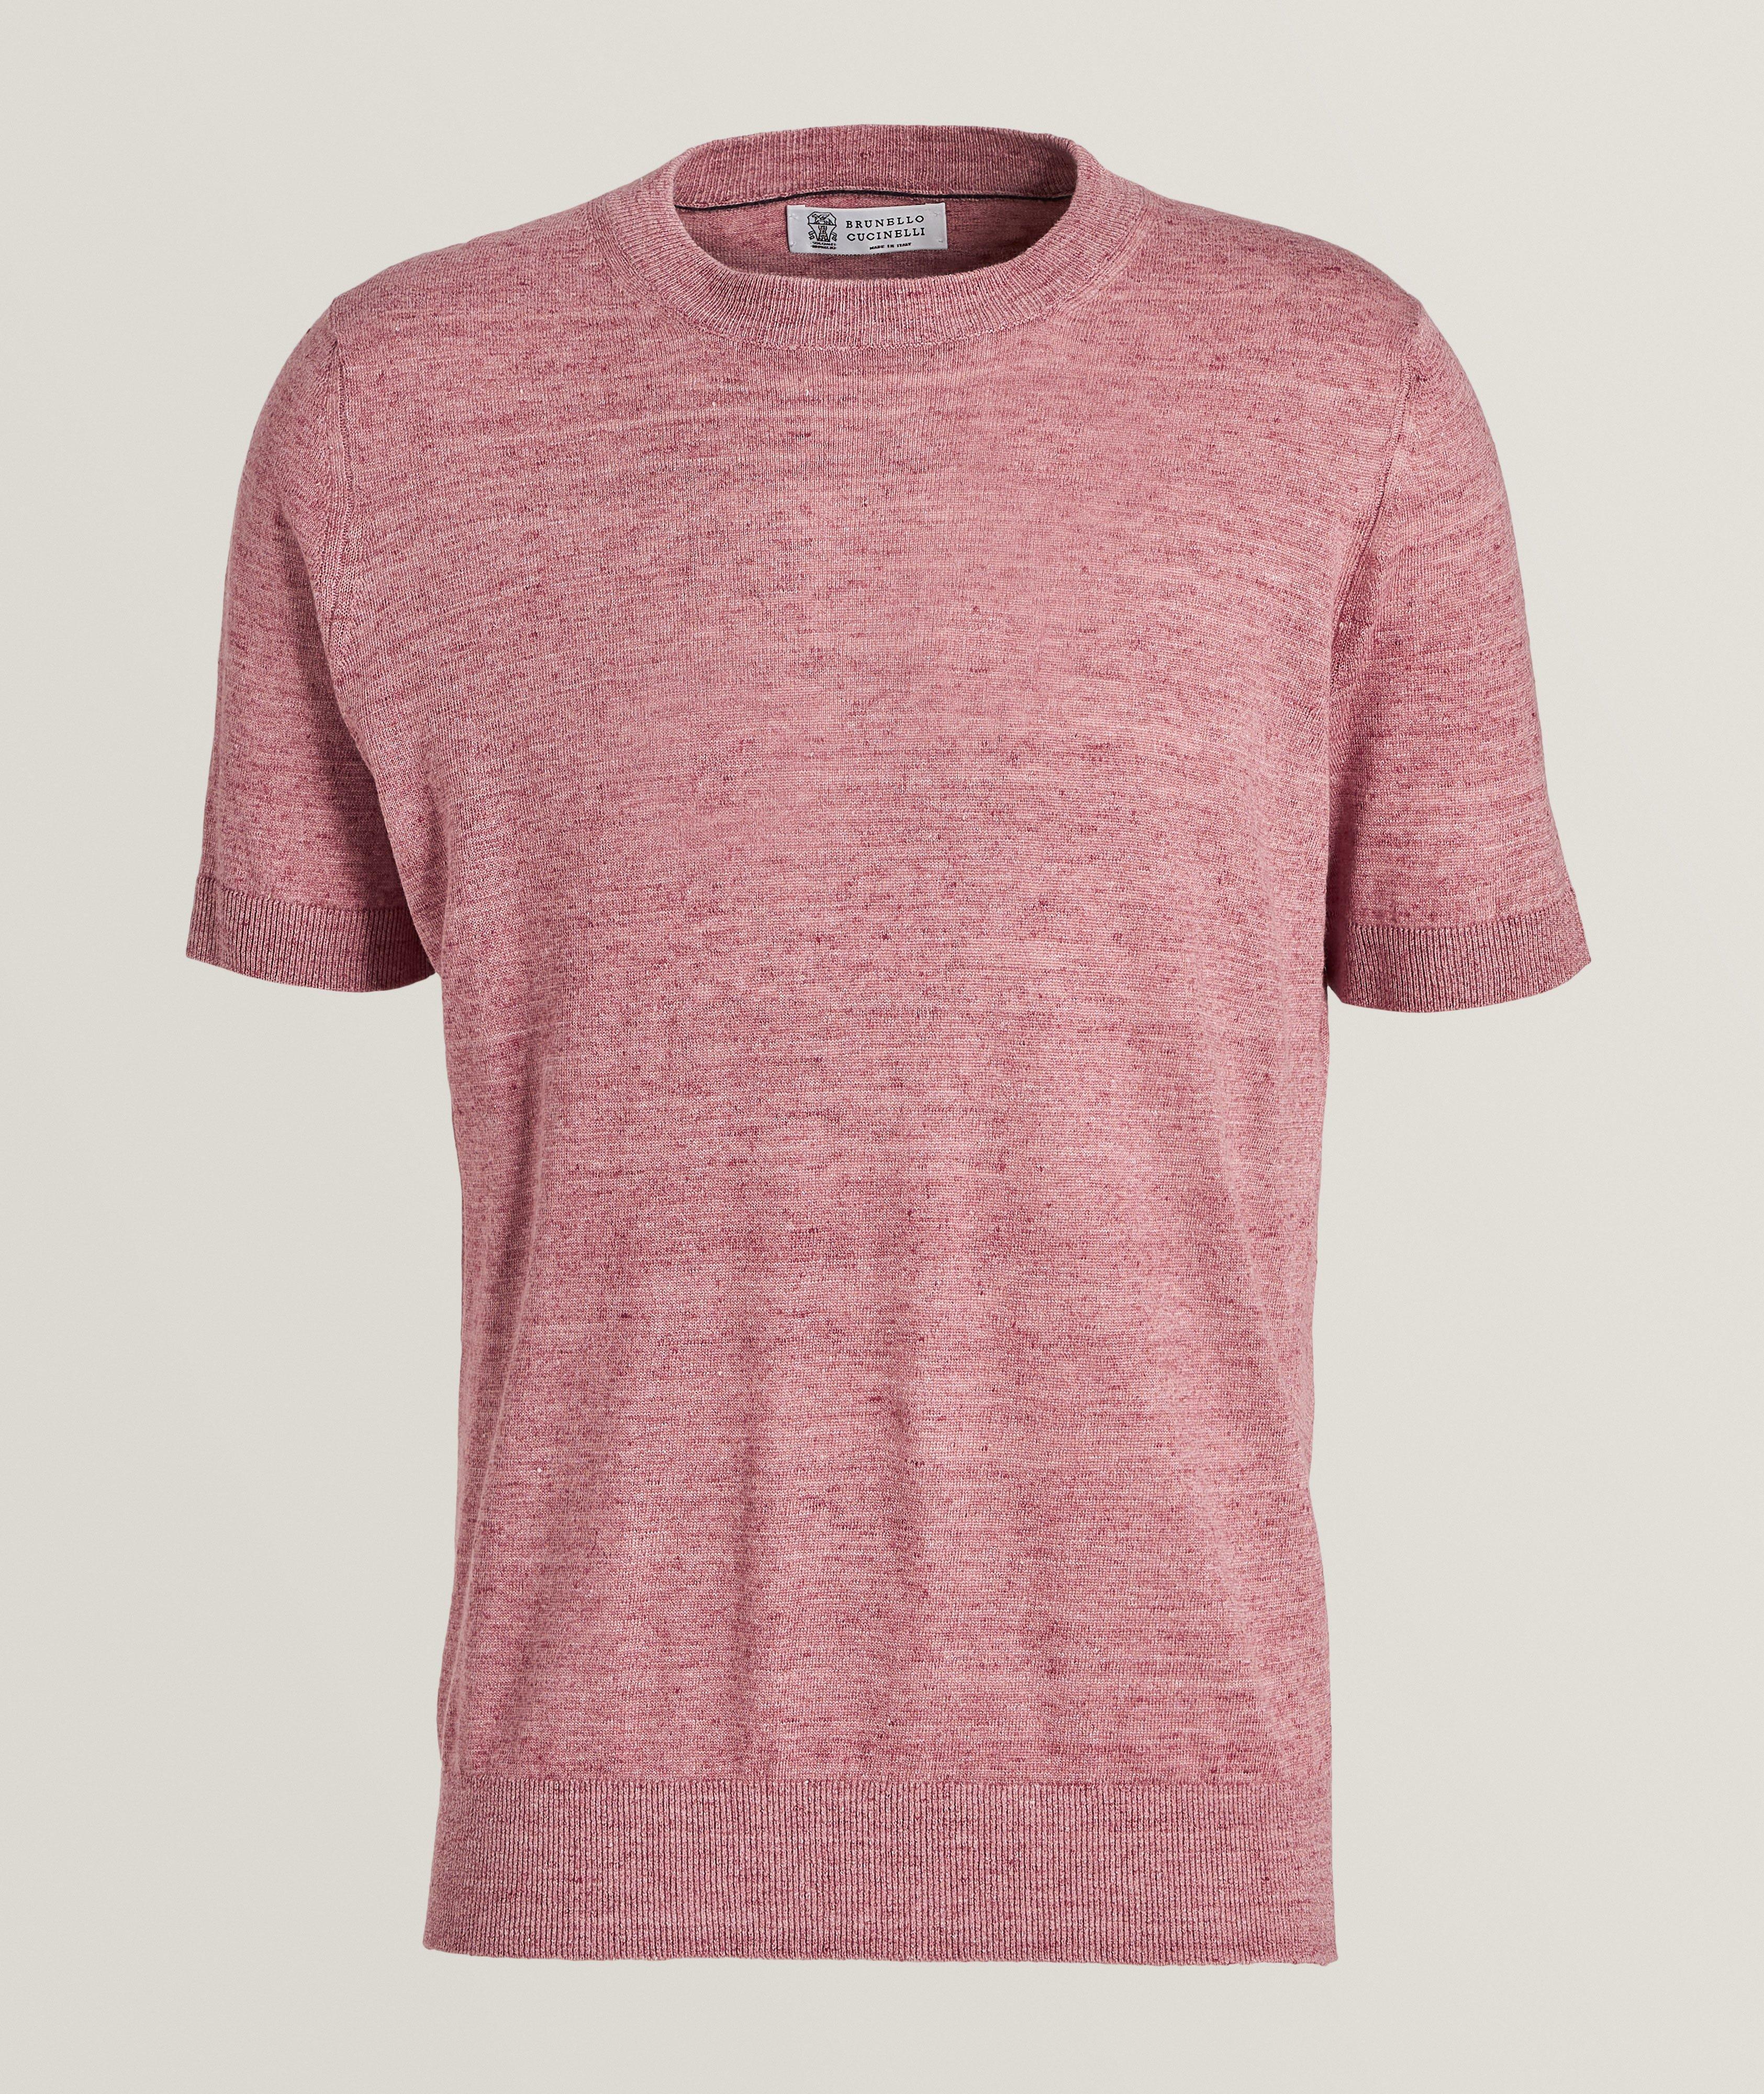 Mélange Linen-Cotton T-Shirt image 0